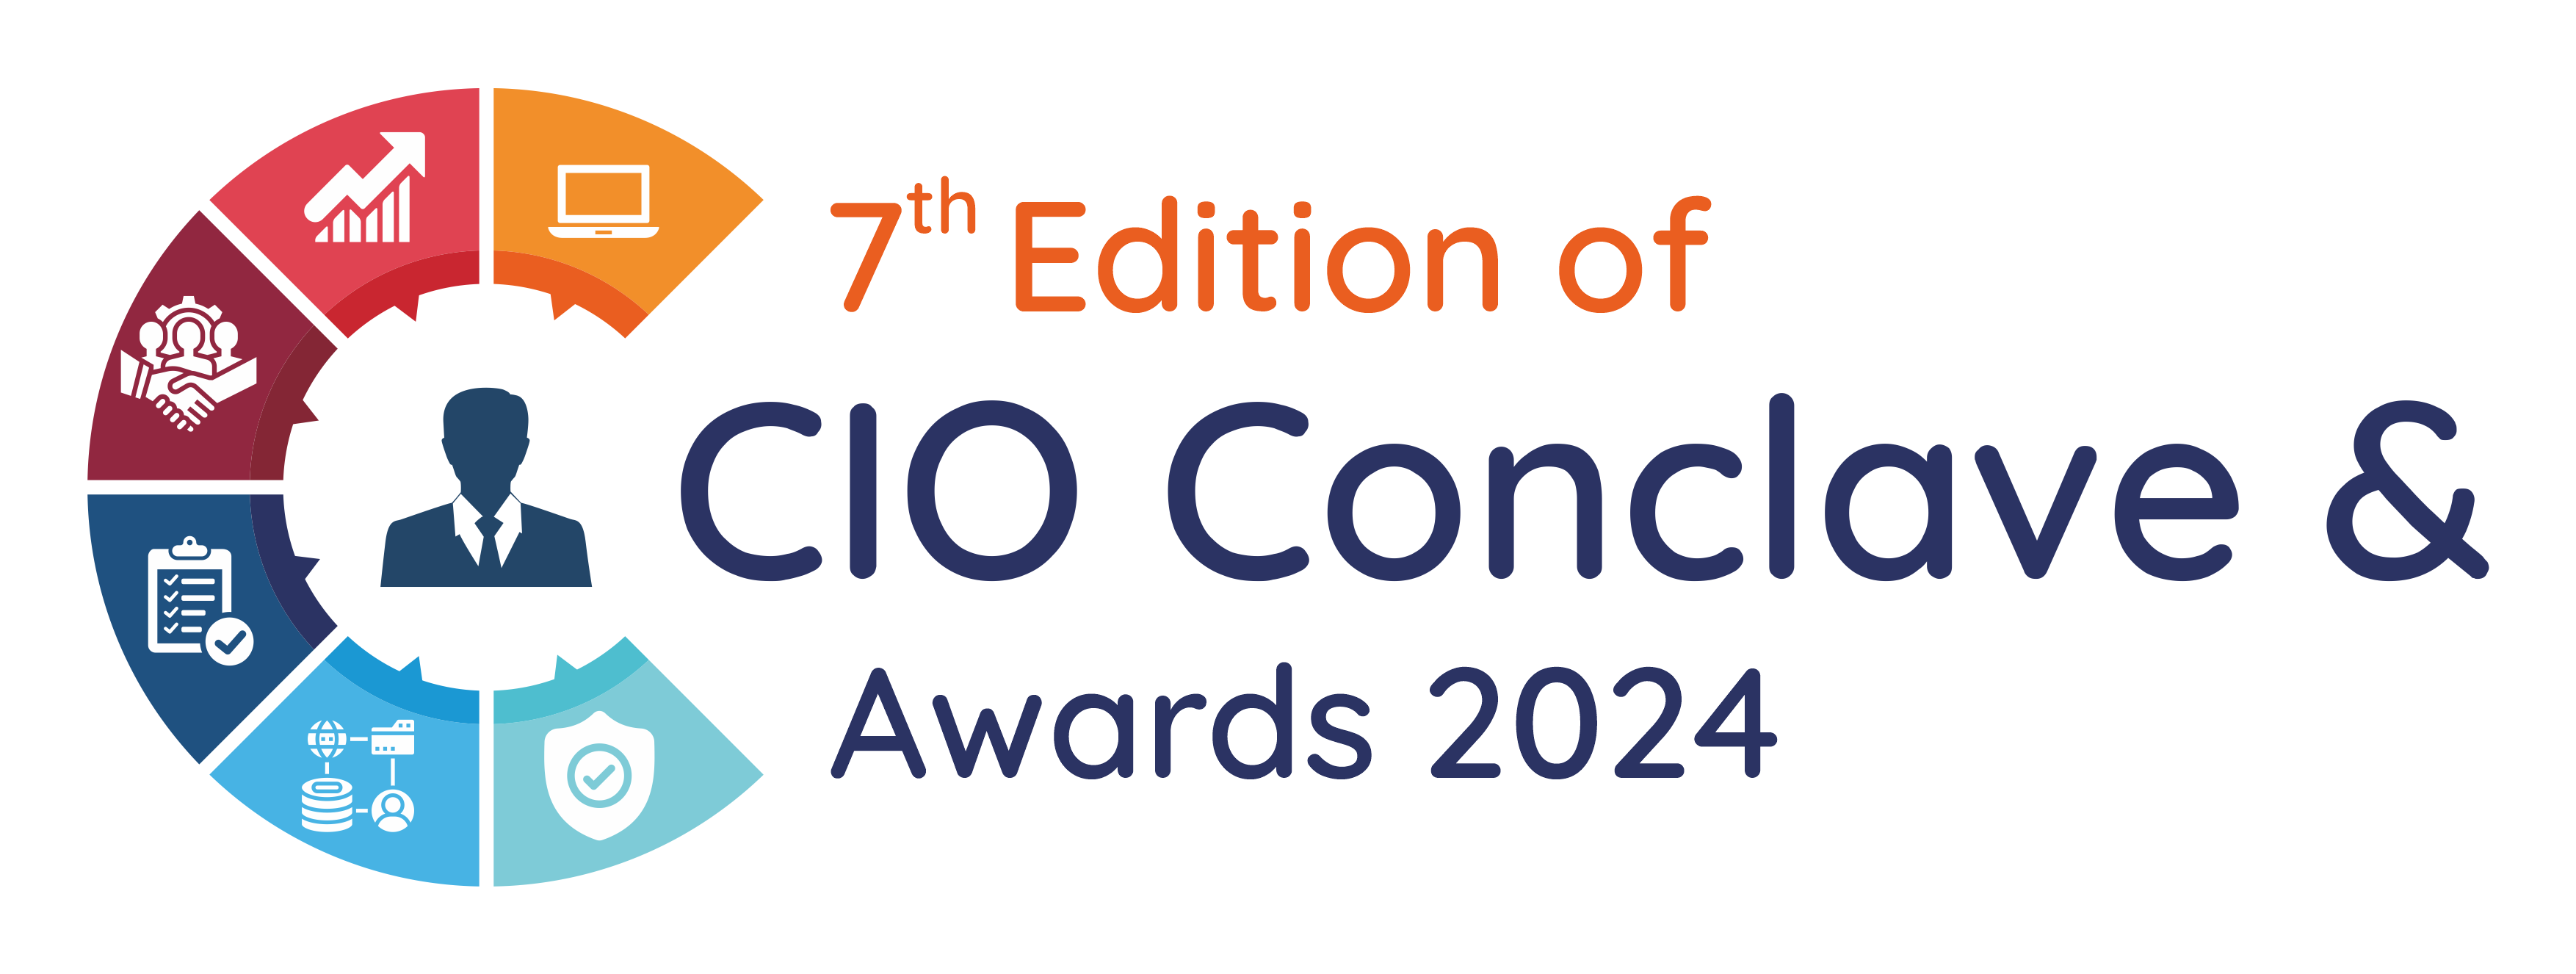 7th Edition CIO Conclave Summit & Awards 2024